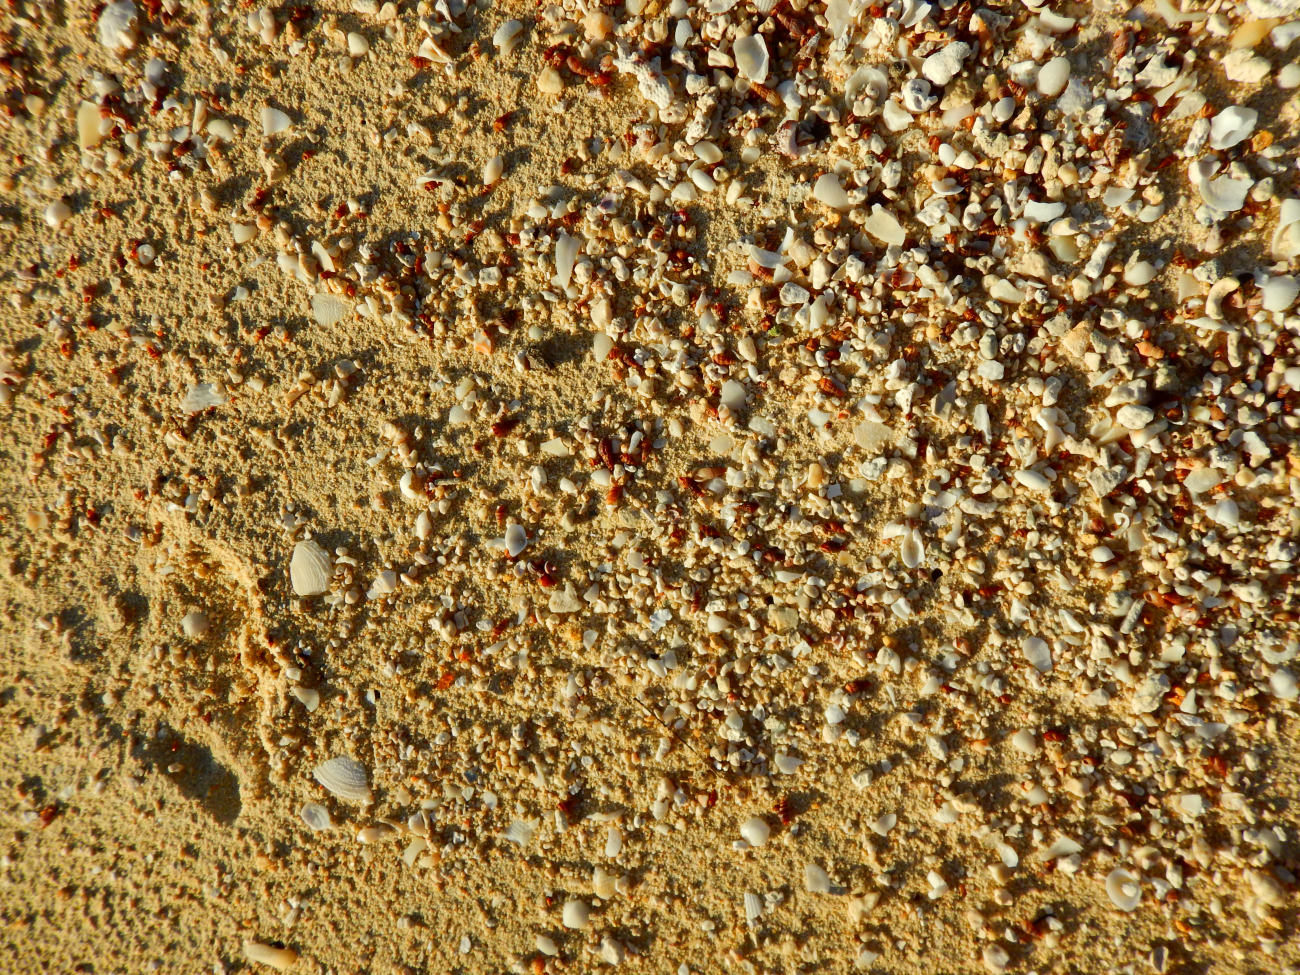 Coral sand and seashells along the beach at Hagatna